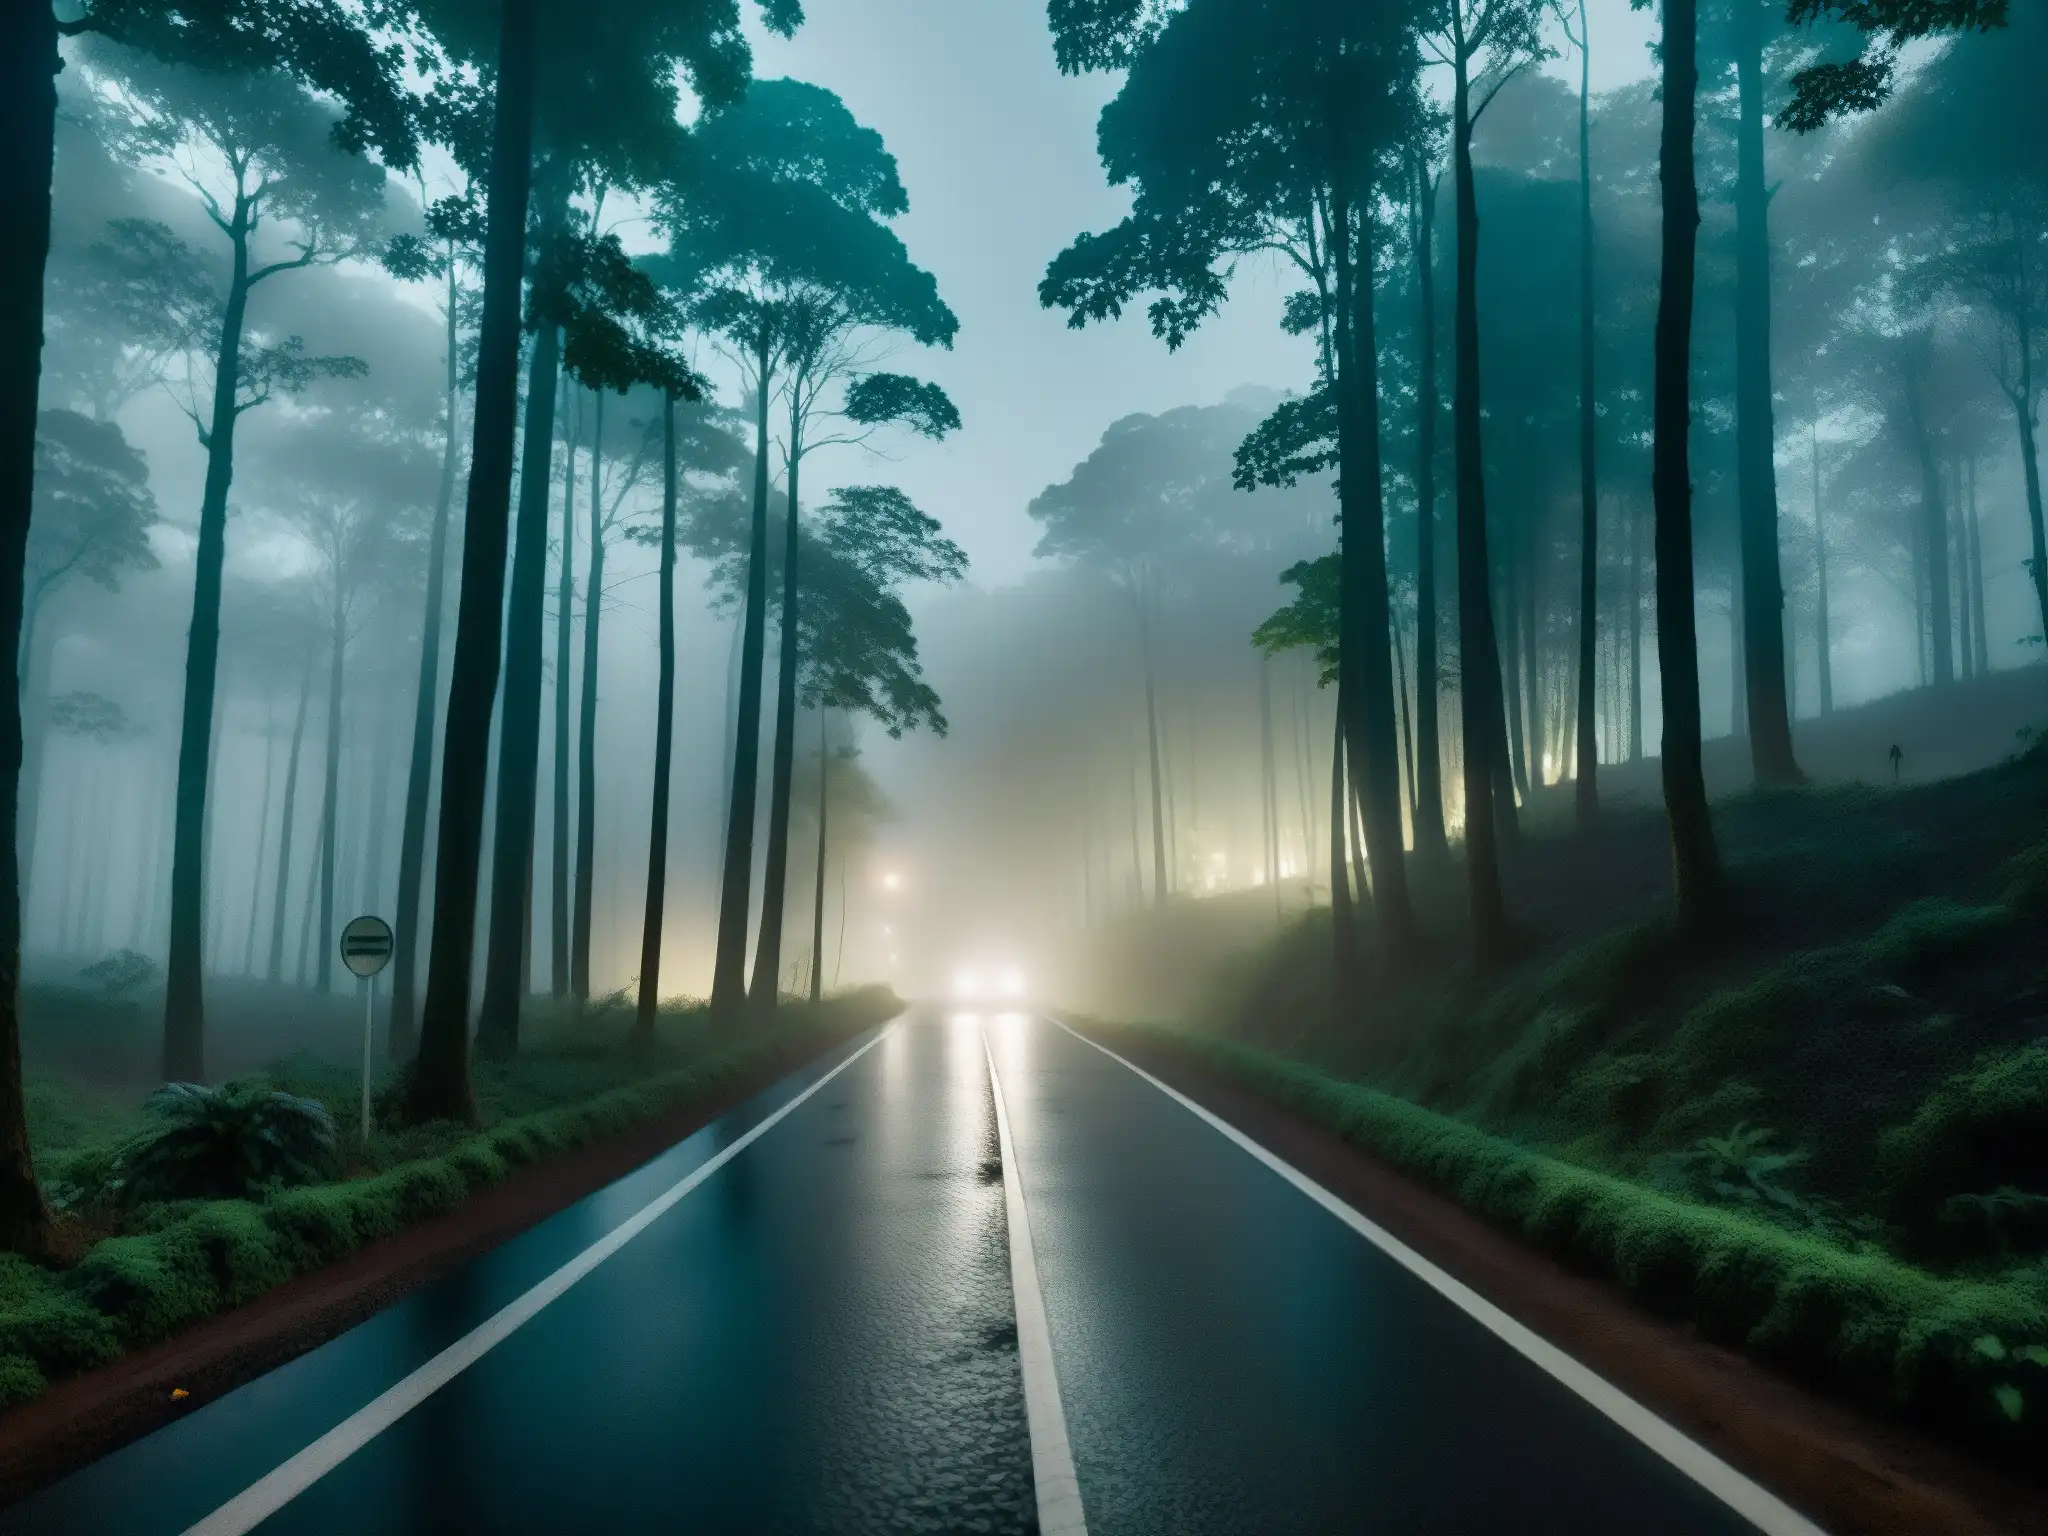 A lo lejos, una carretera neblinosa y oscura se adentra en un denso bosque